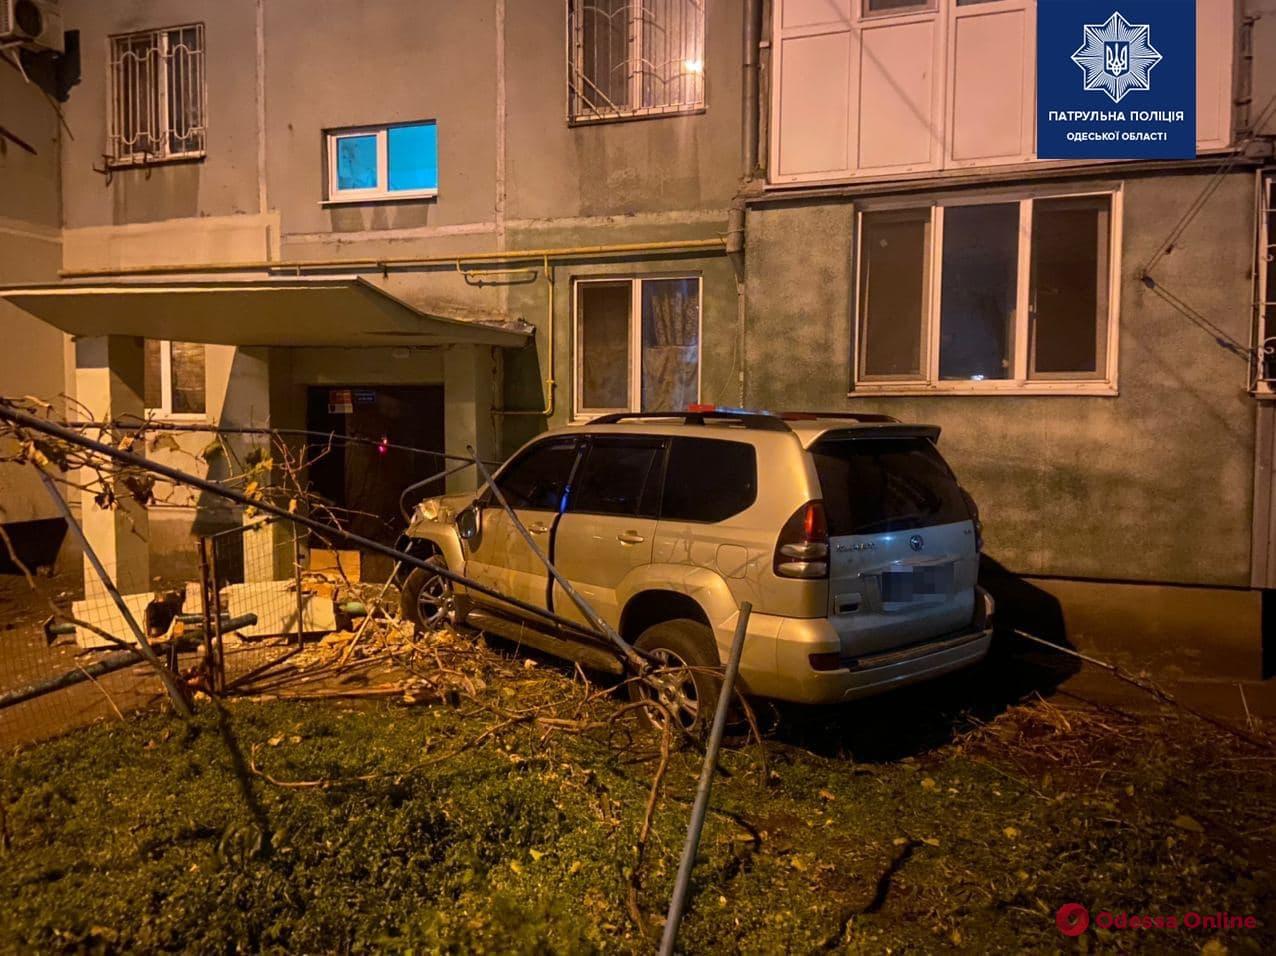 В Одессе пьяный водитель предлагал патрульным взятку, пытался скрыться и въехал в подъезд многоэтажки (фото, видео)